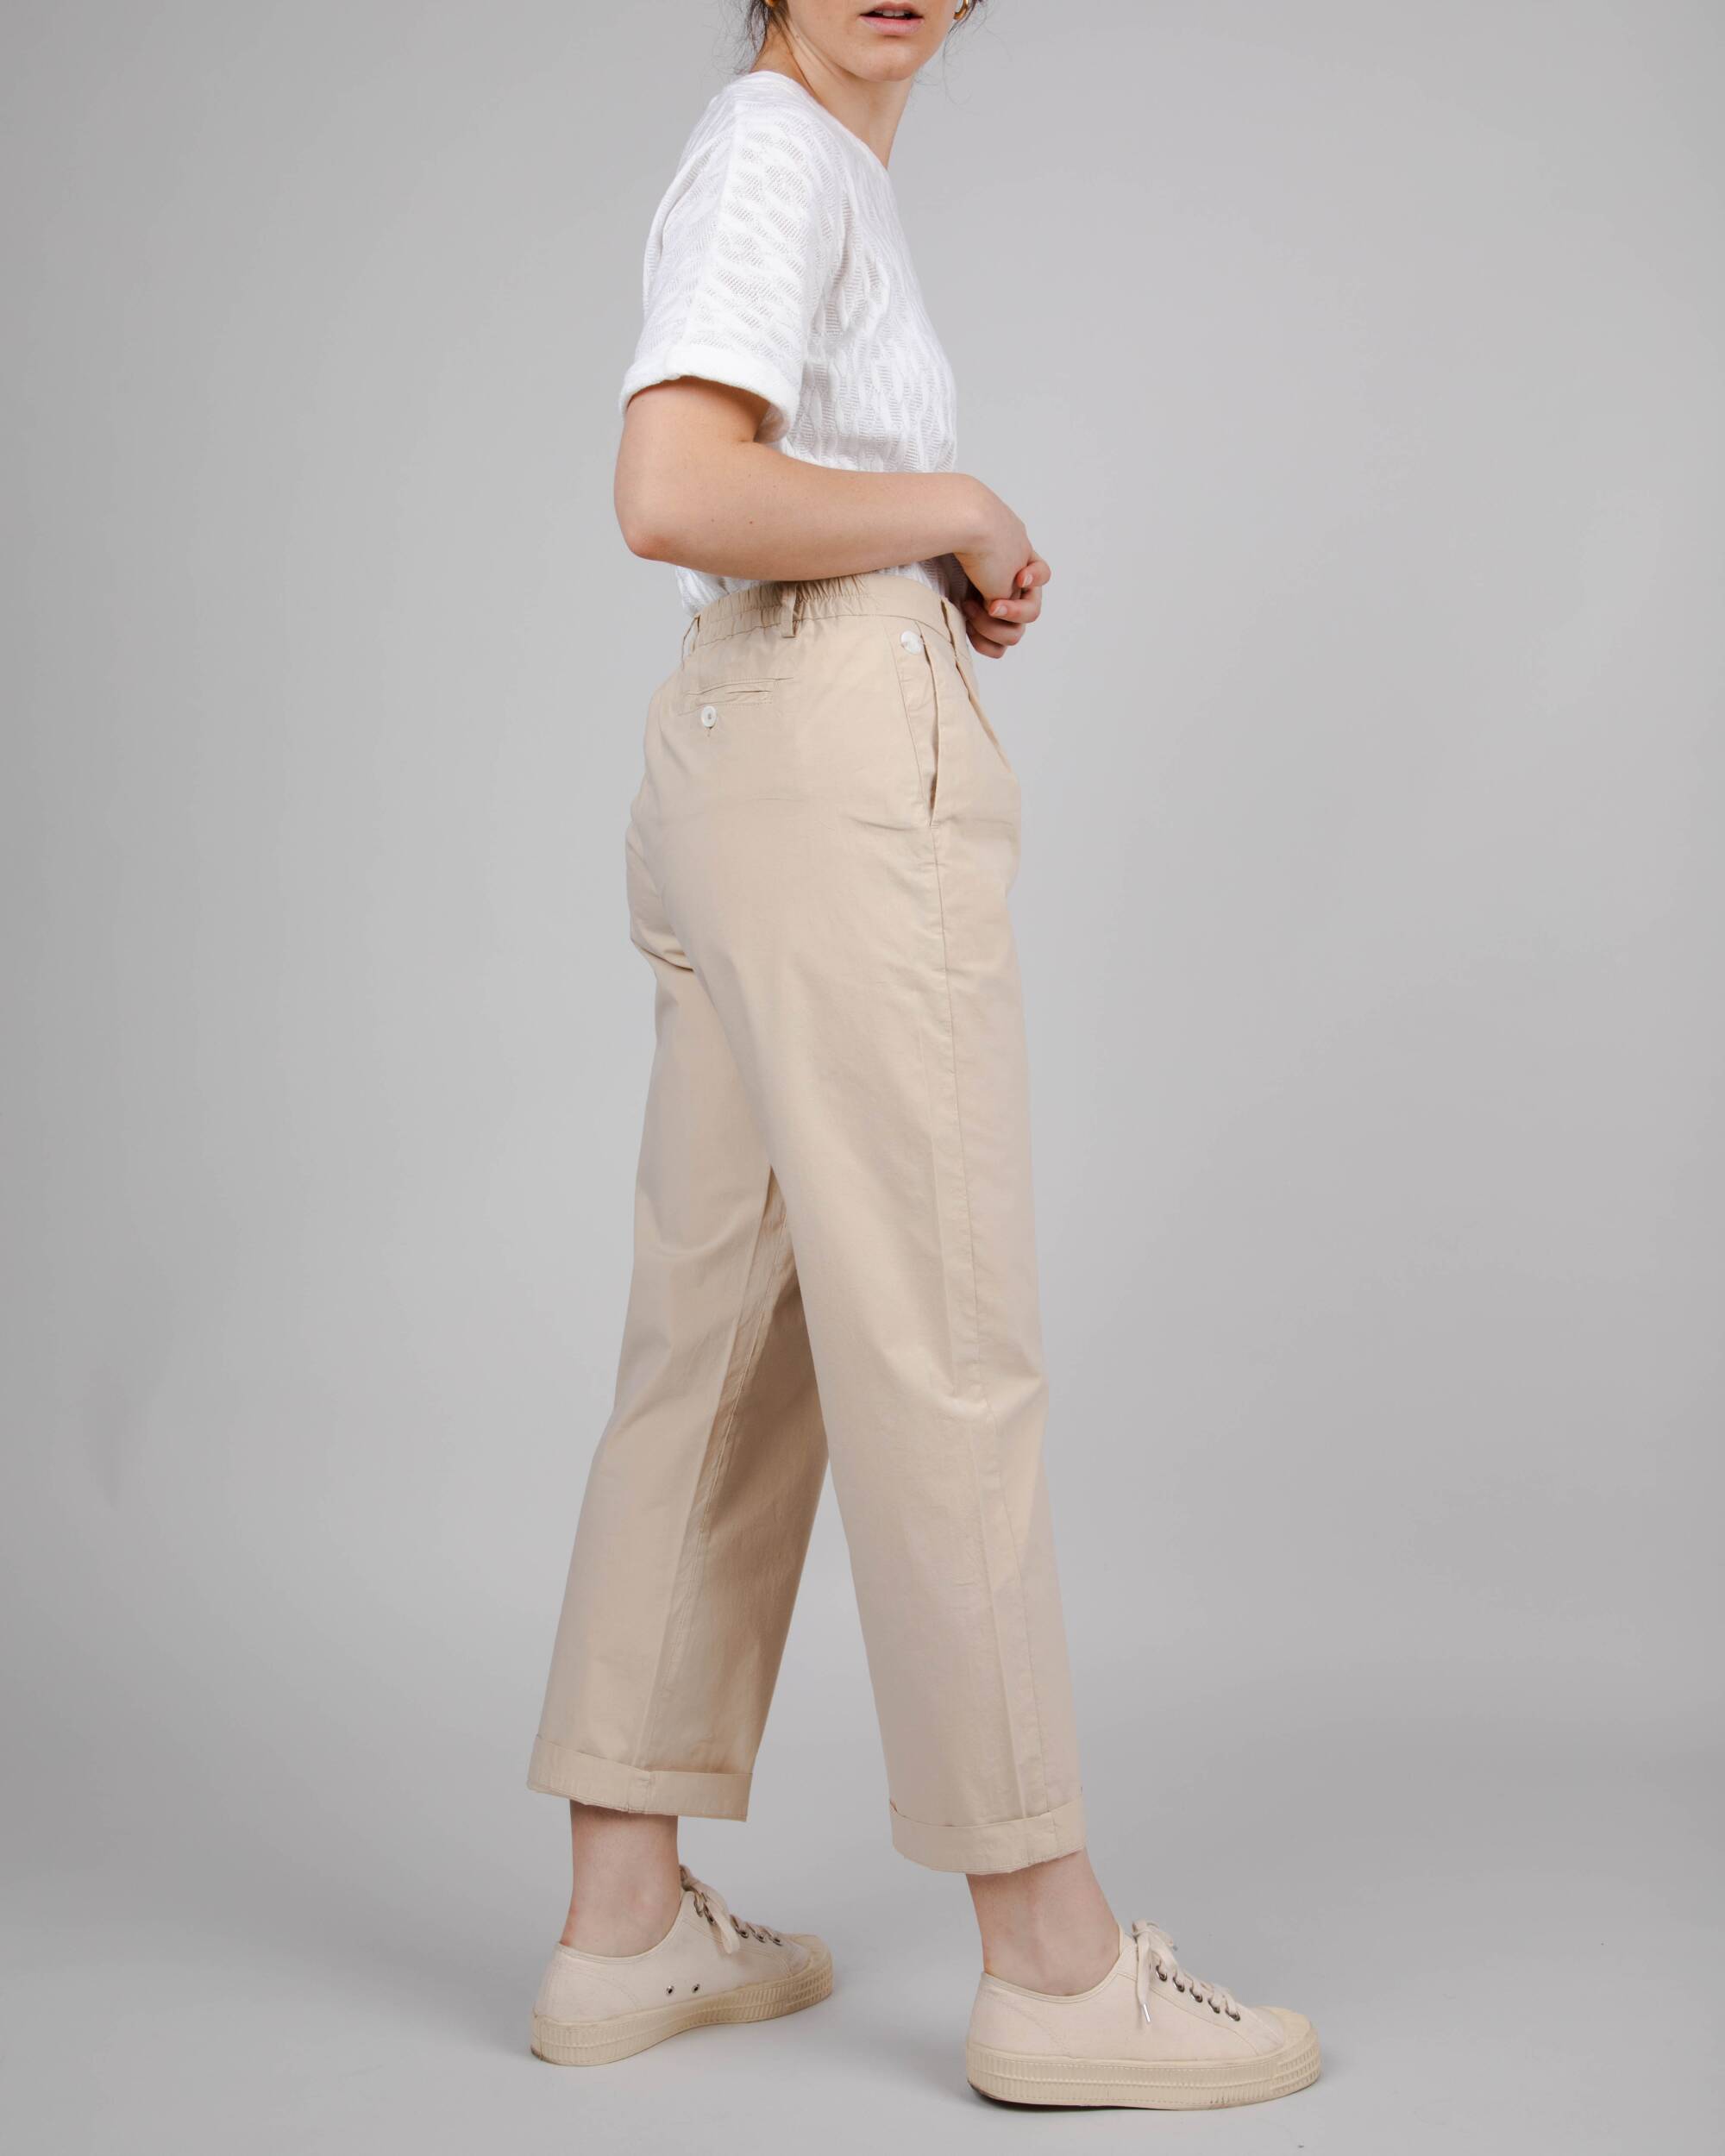 Pantalon chino beige élastique en coton biologique de Brava Fabrics